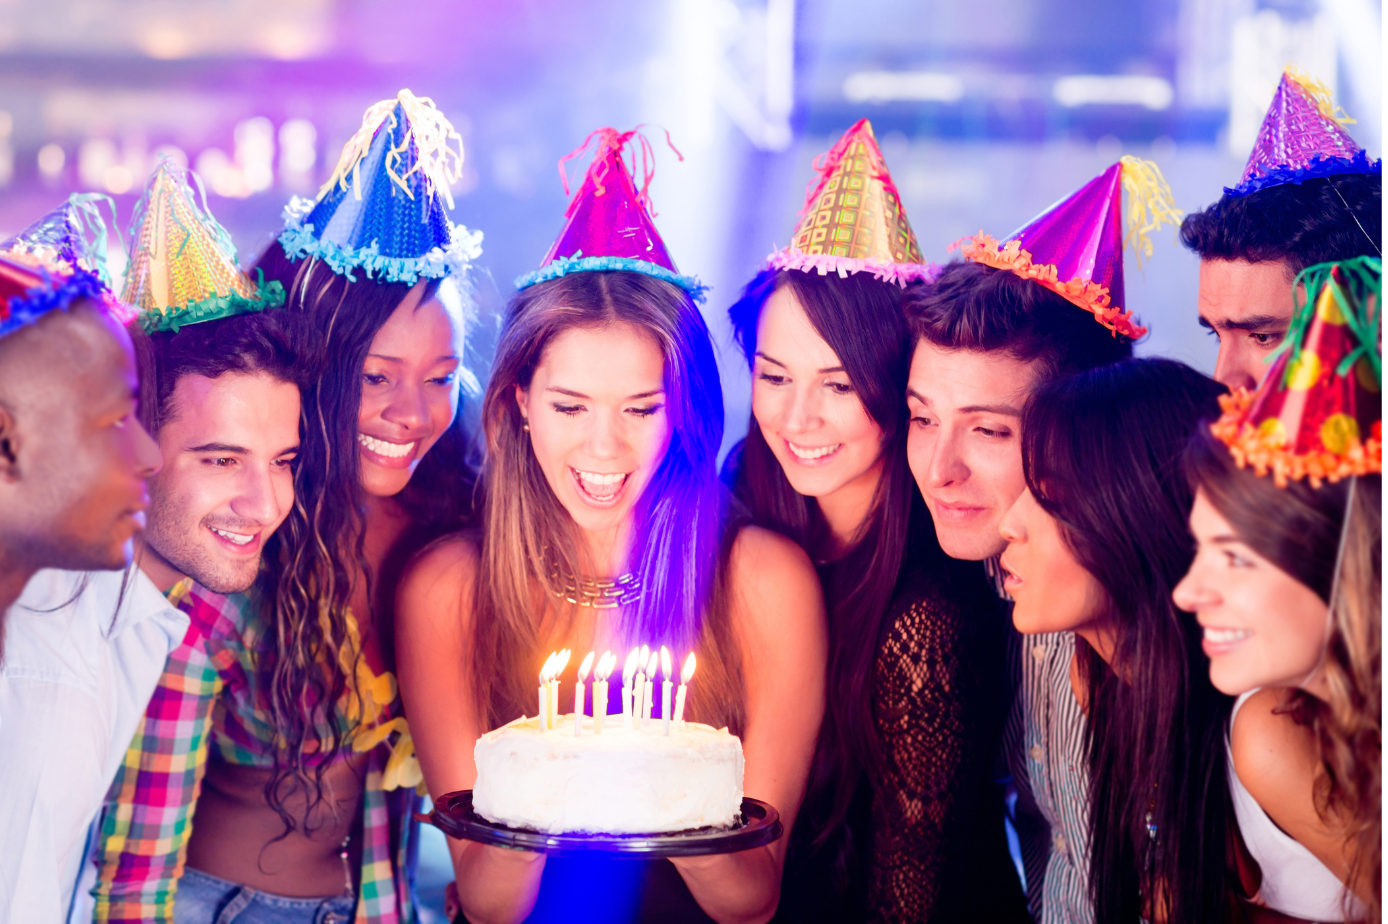 Make a party do a party. Празднование дня рождения. День рождения вечеринка. Люди празднуют день рождения. Отмечание дня рождения.